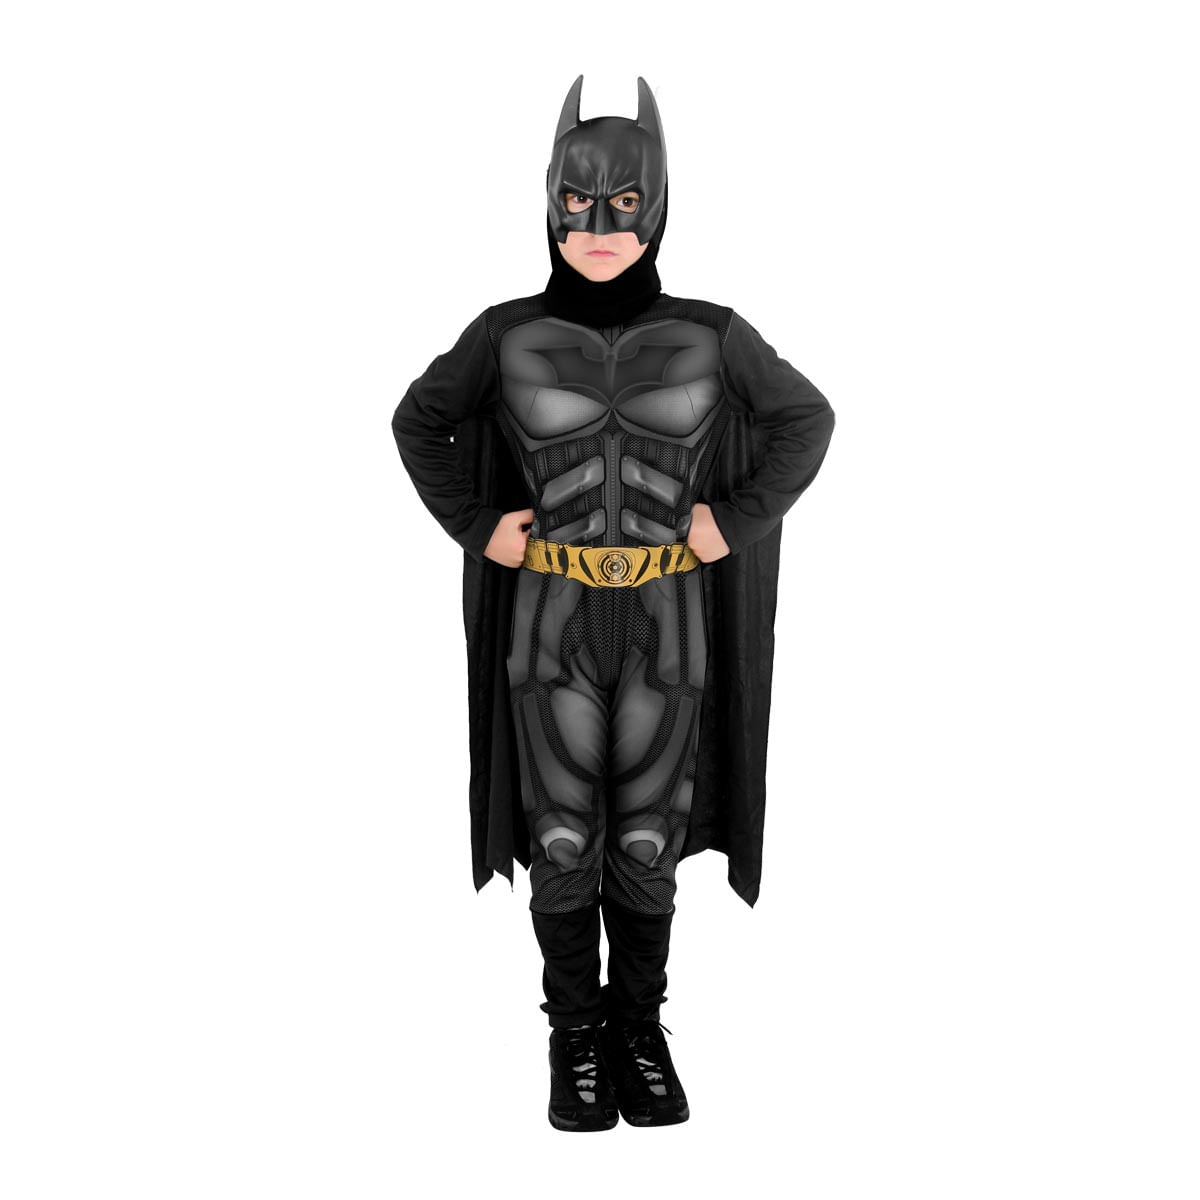 Fantasia Batman Infantil Standard - O Cavaleiro das Trevas Ressurge P / UNICA